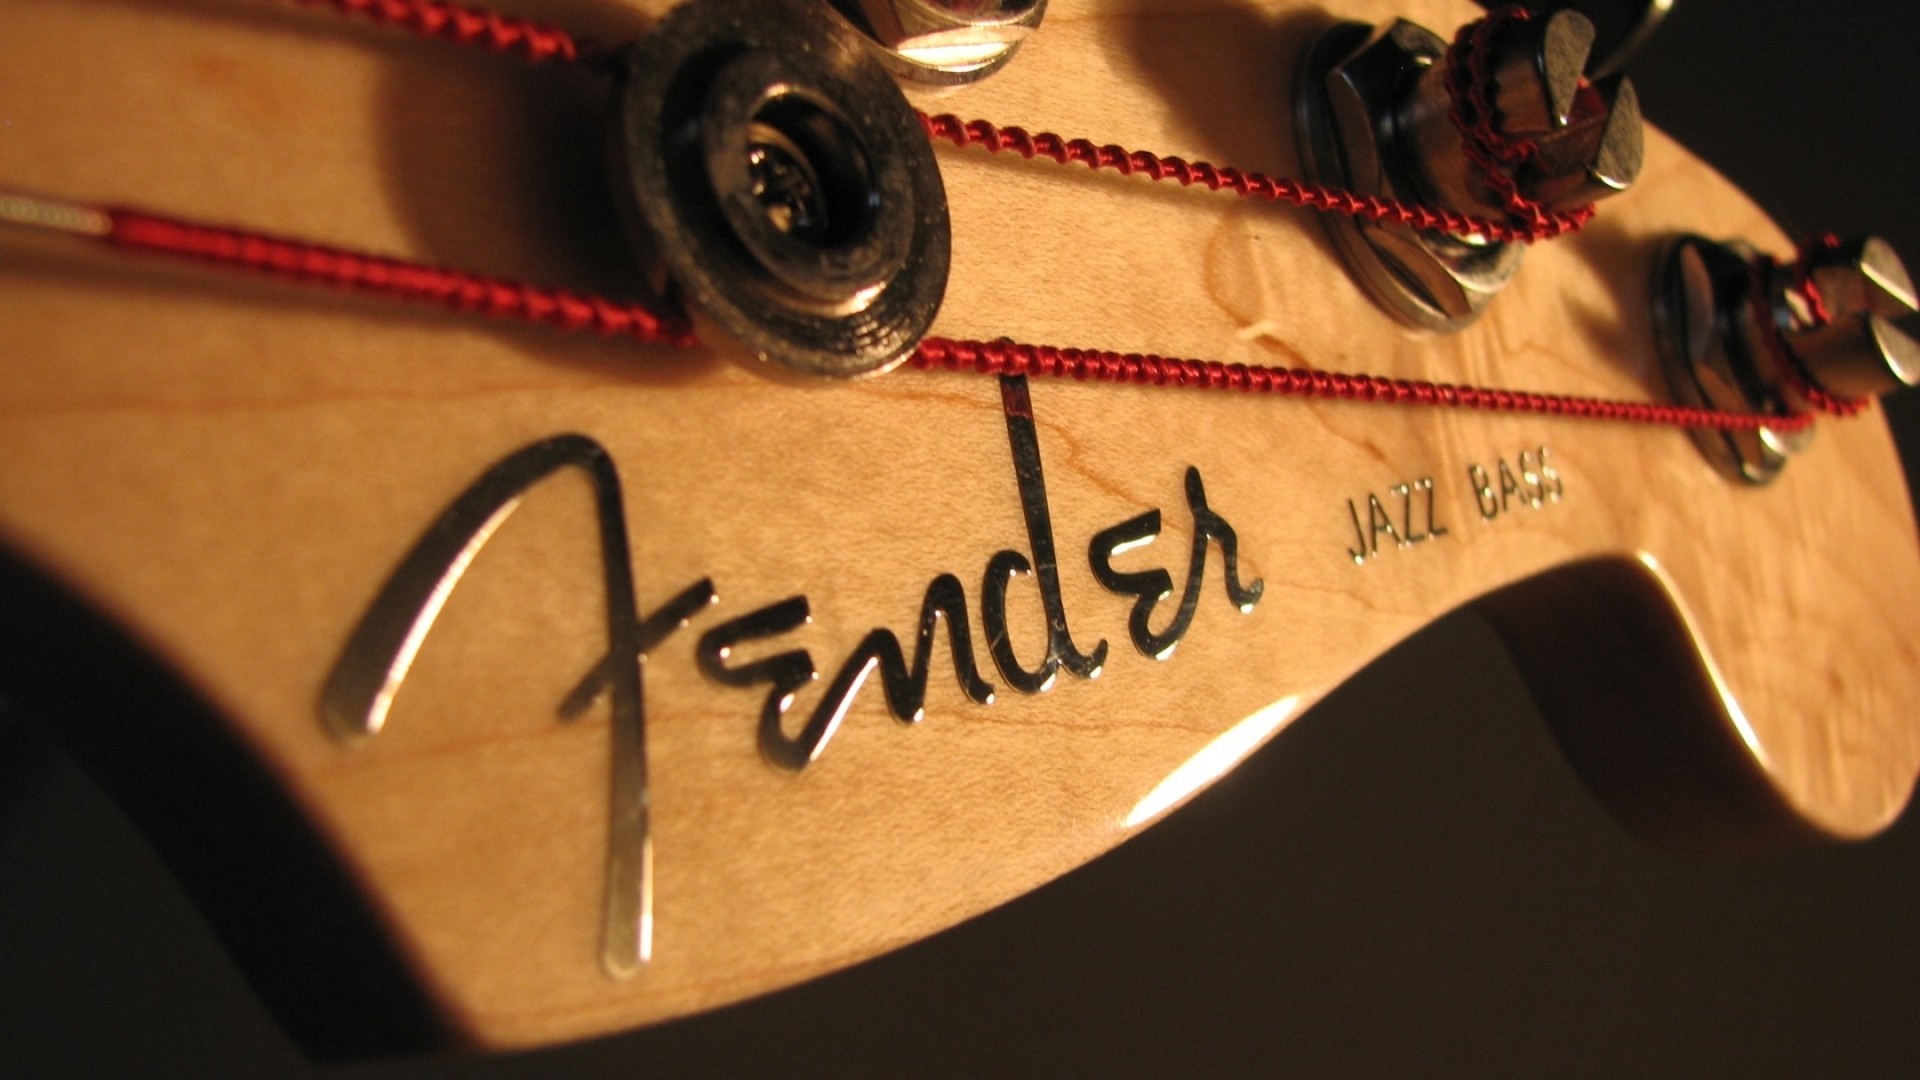 General 1920x1080 Fender bass guitars musical instrument guitar